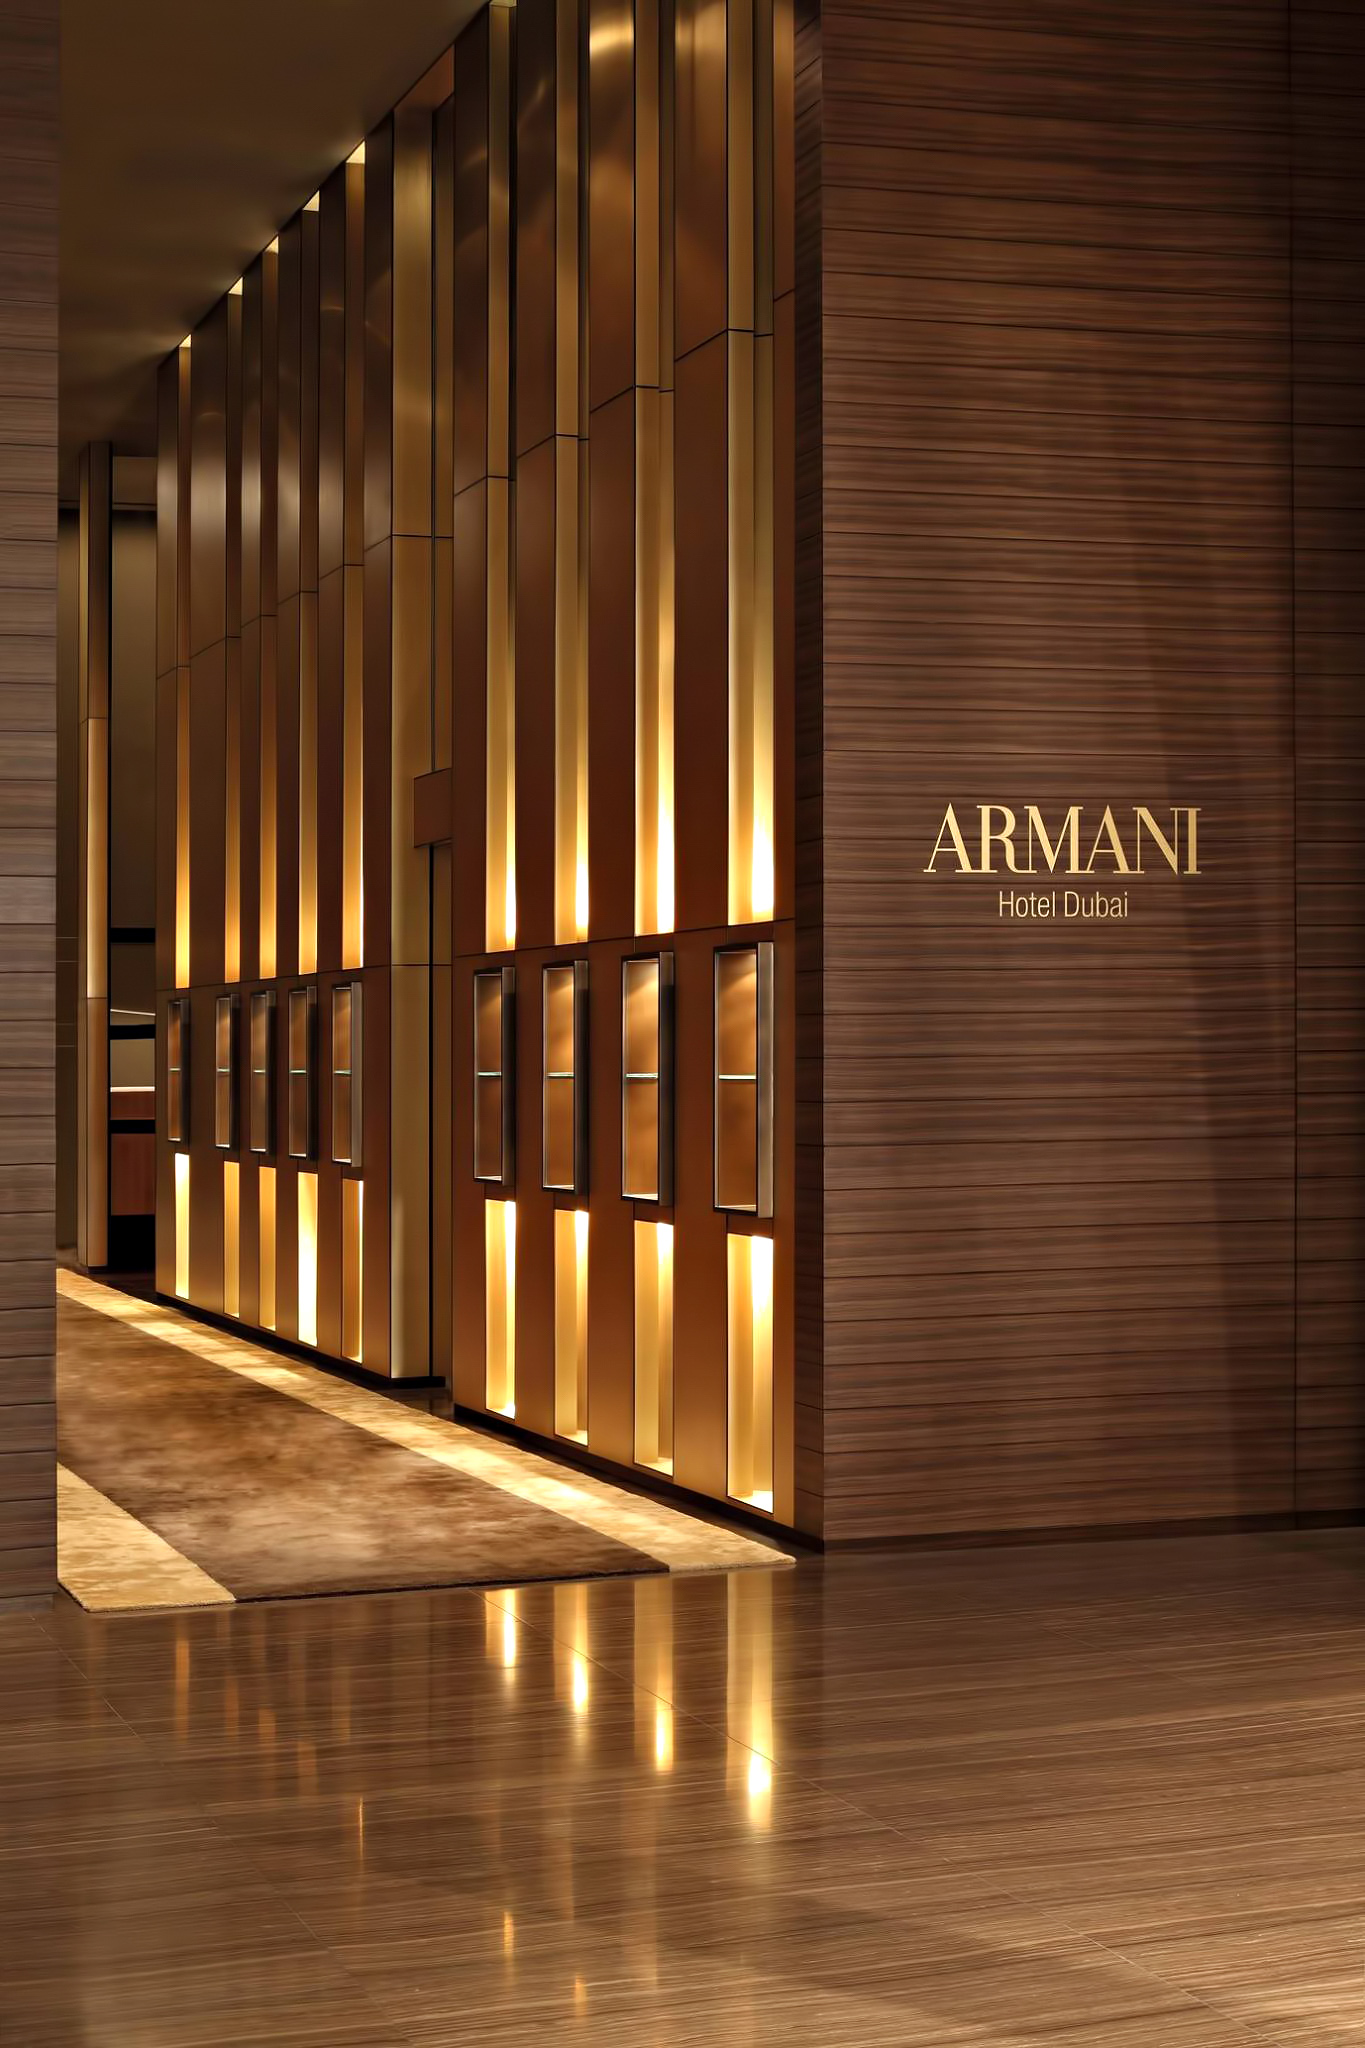 Armani Hotel Dubai – Burj Khalifa, Dubai, UAE – Armani Hotel Interior